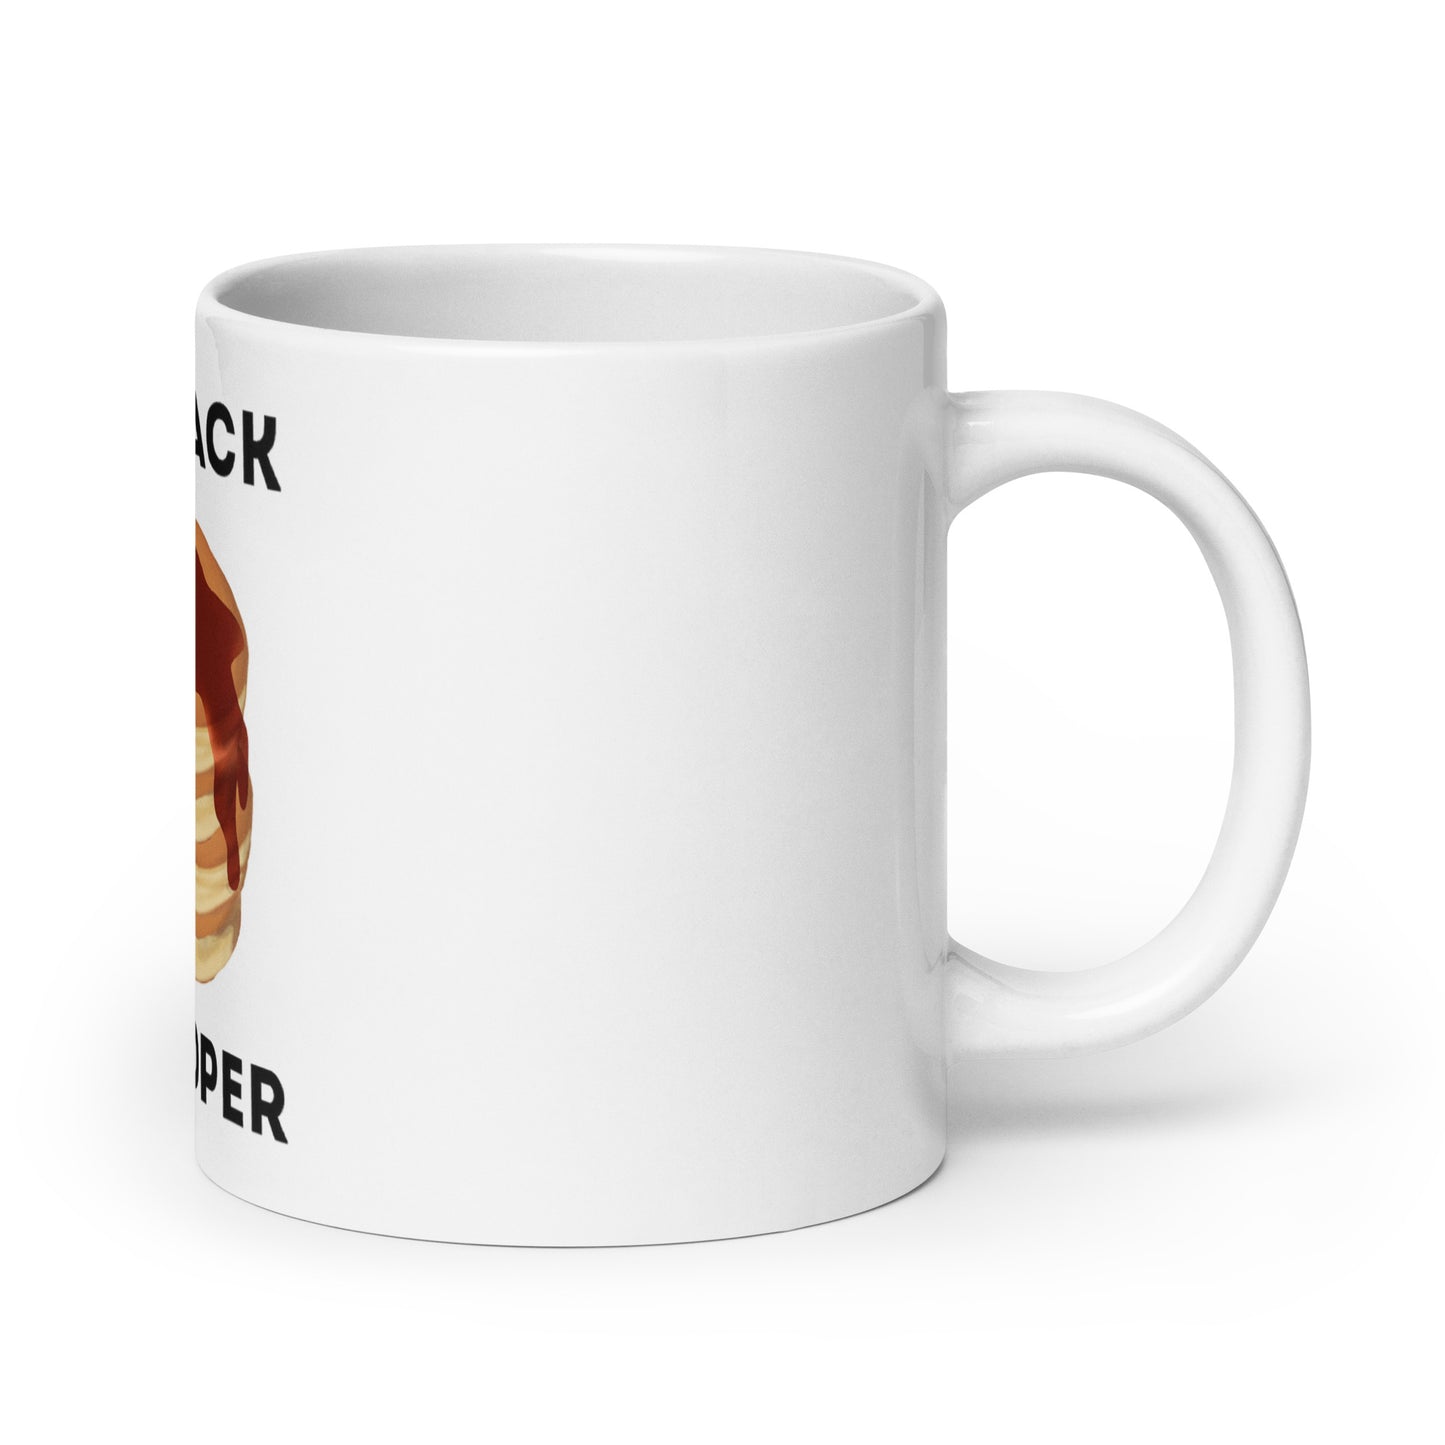 Pancakes glossy mug